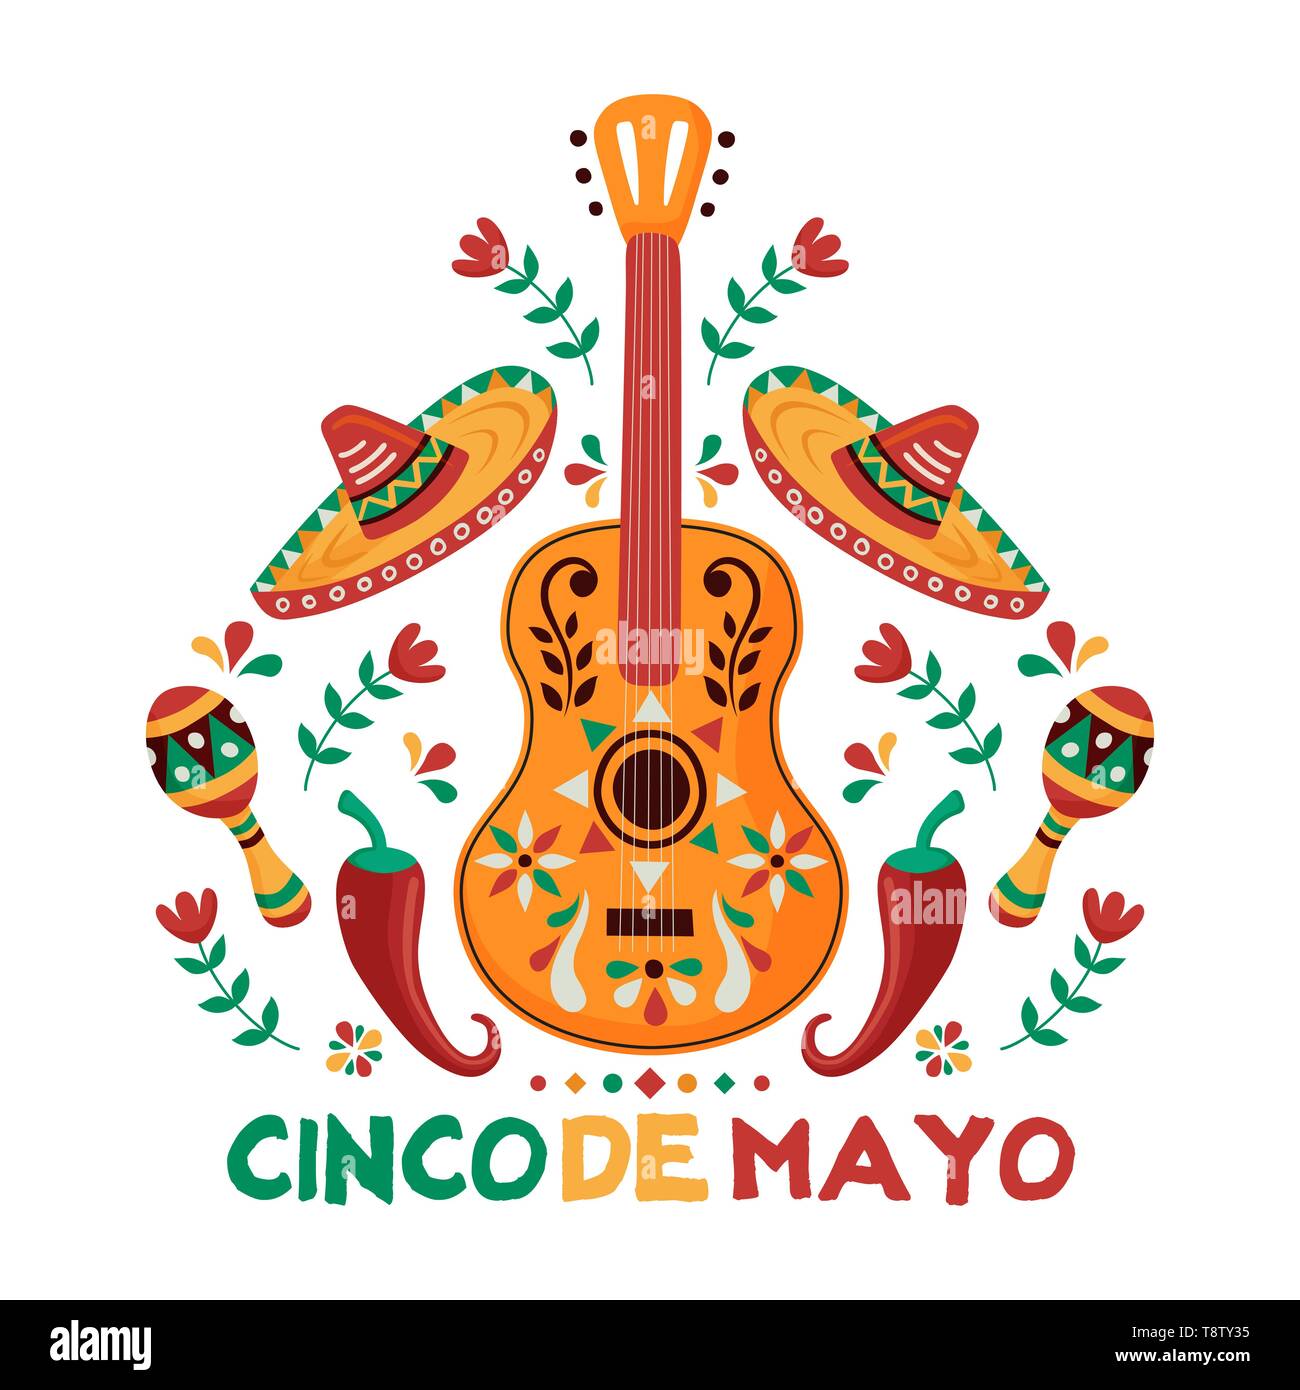 Cinco de Mayo biglietto di auguri per l'indipendenza messicana celebrazione. Tradizionale chitarra mariachi e la cultura del Messico decorazione. Include le maracas, cappello, ch Illustrazione Vettoriale